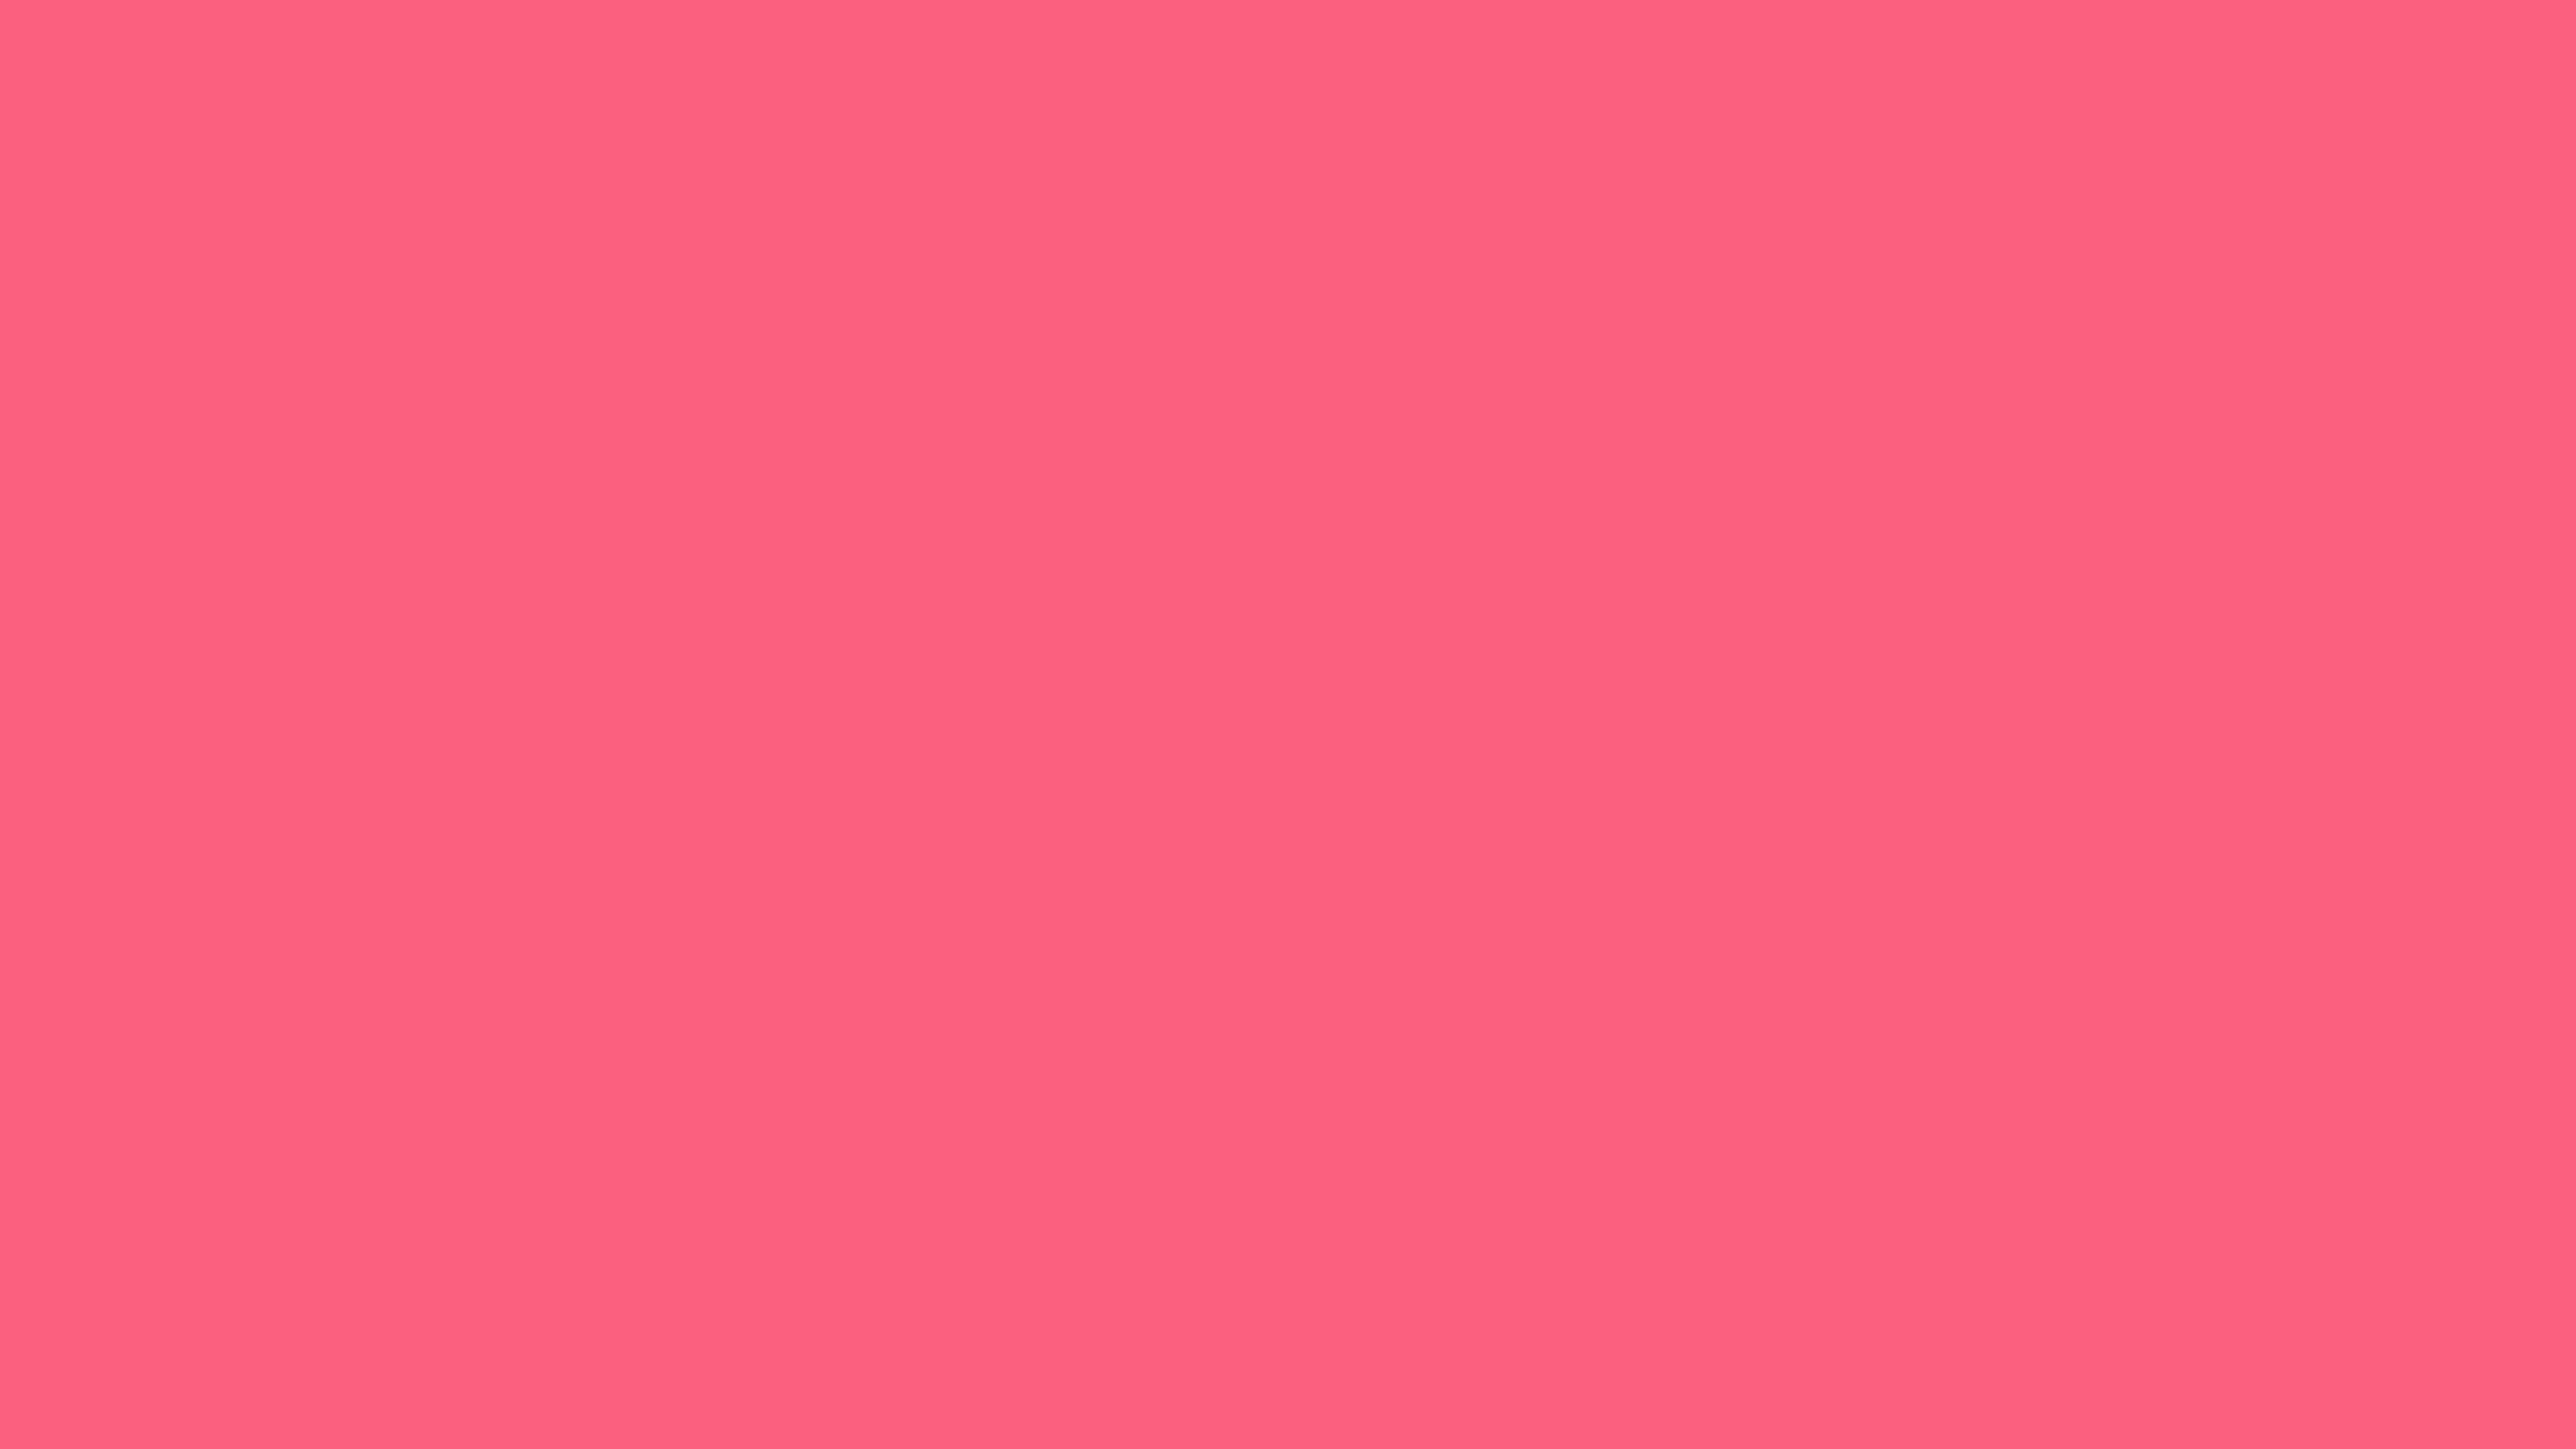 7680x4320 Brink Pink Solid Color Background